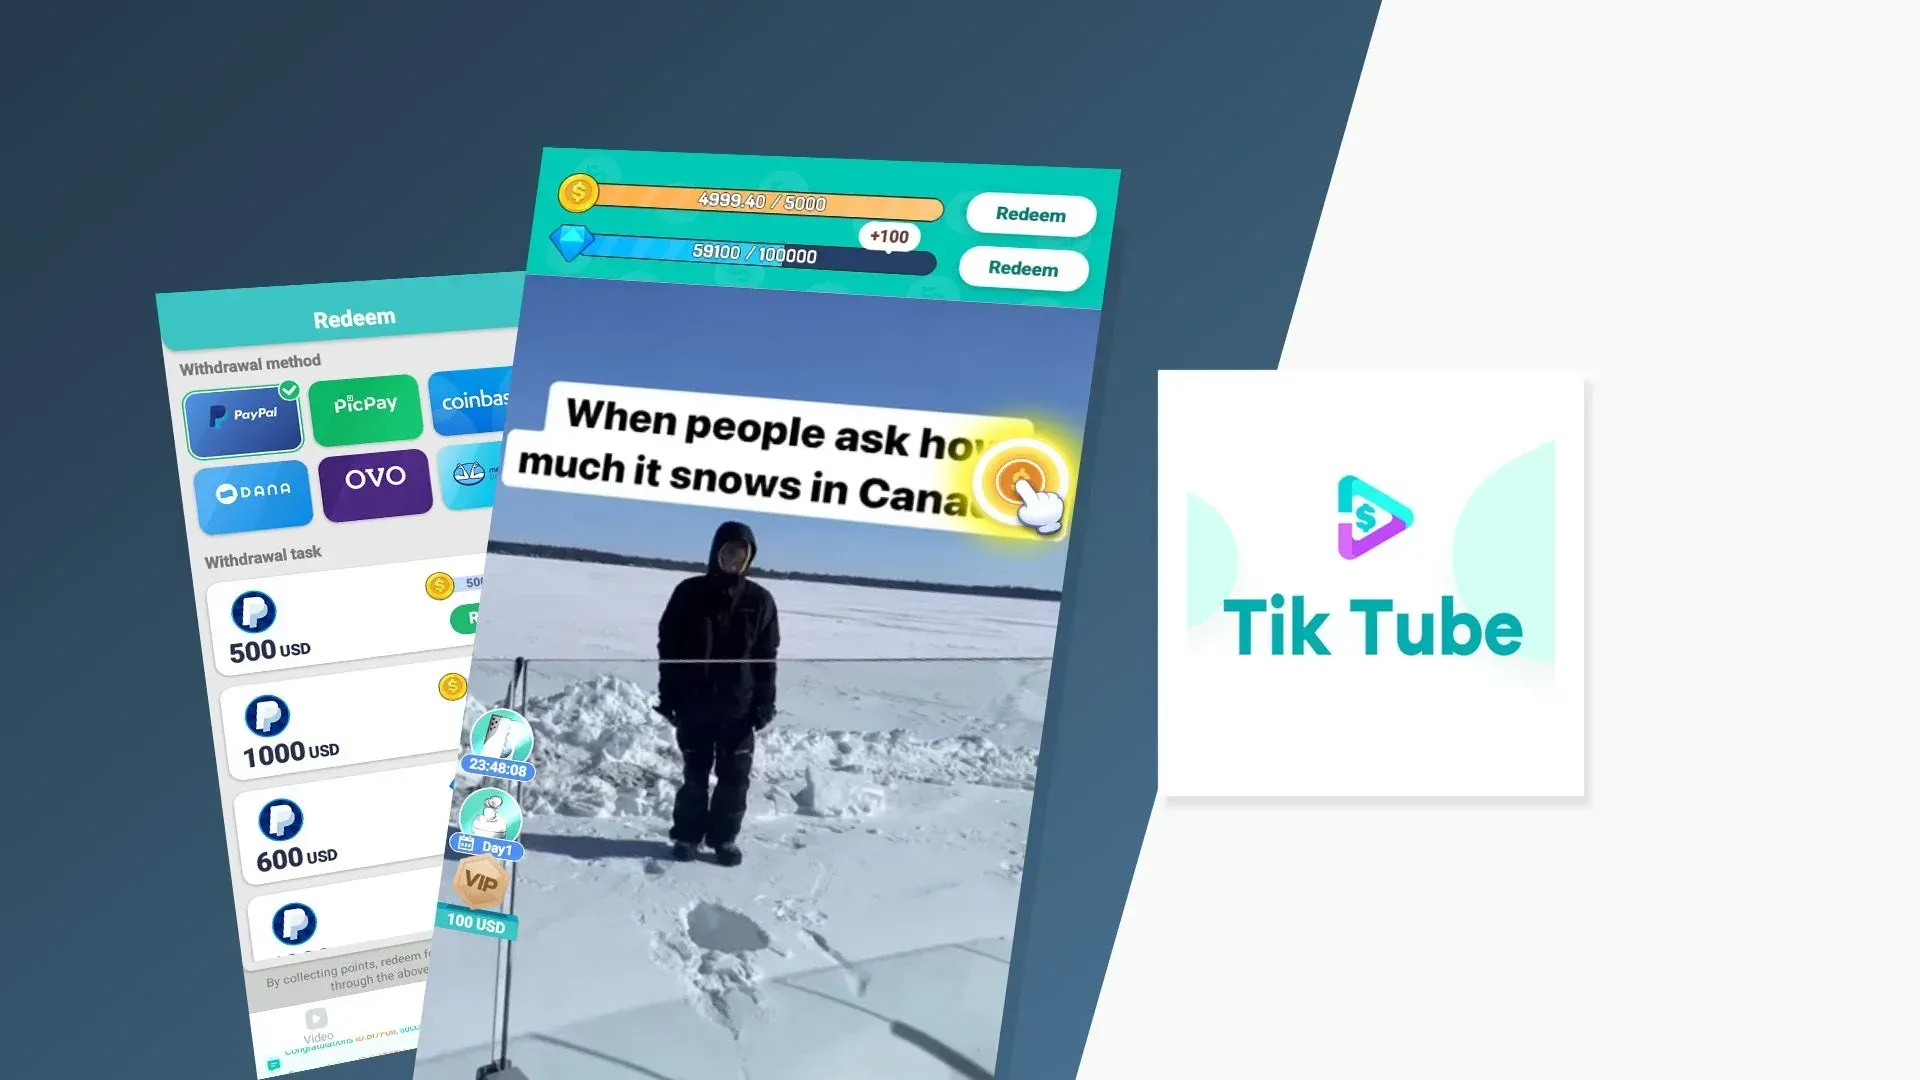 Tik Tube App - Is it a Scam?